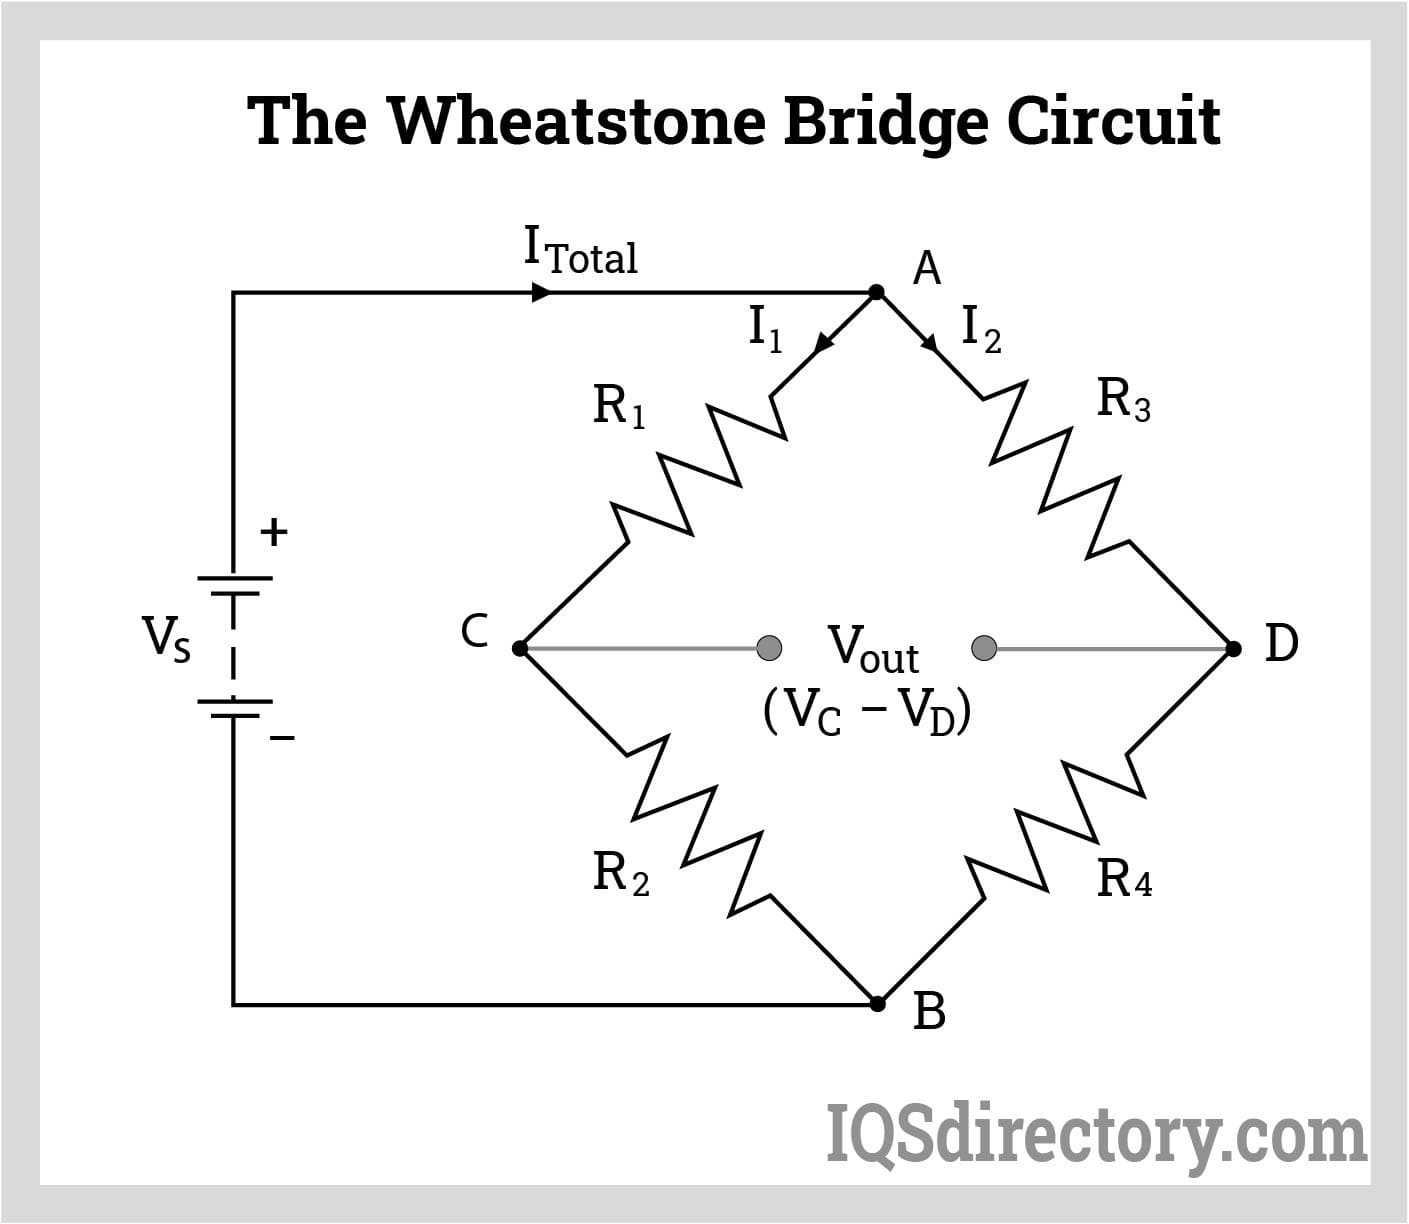 The Wheatstone Bridge Circuit